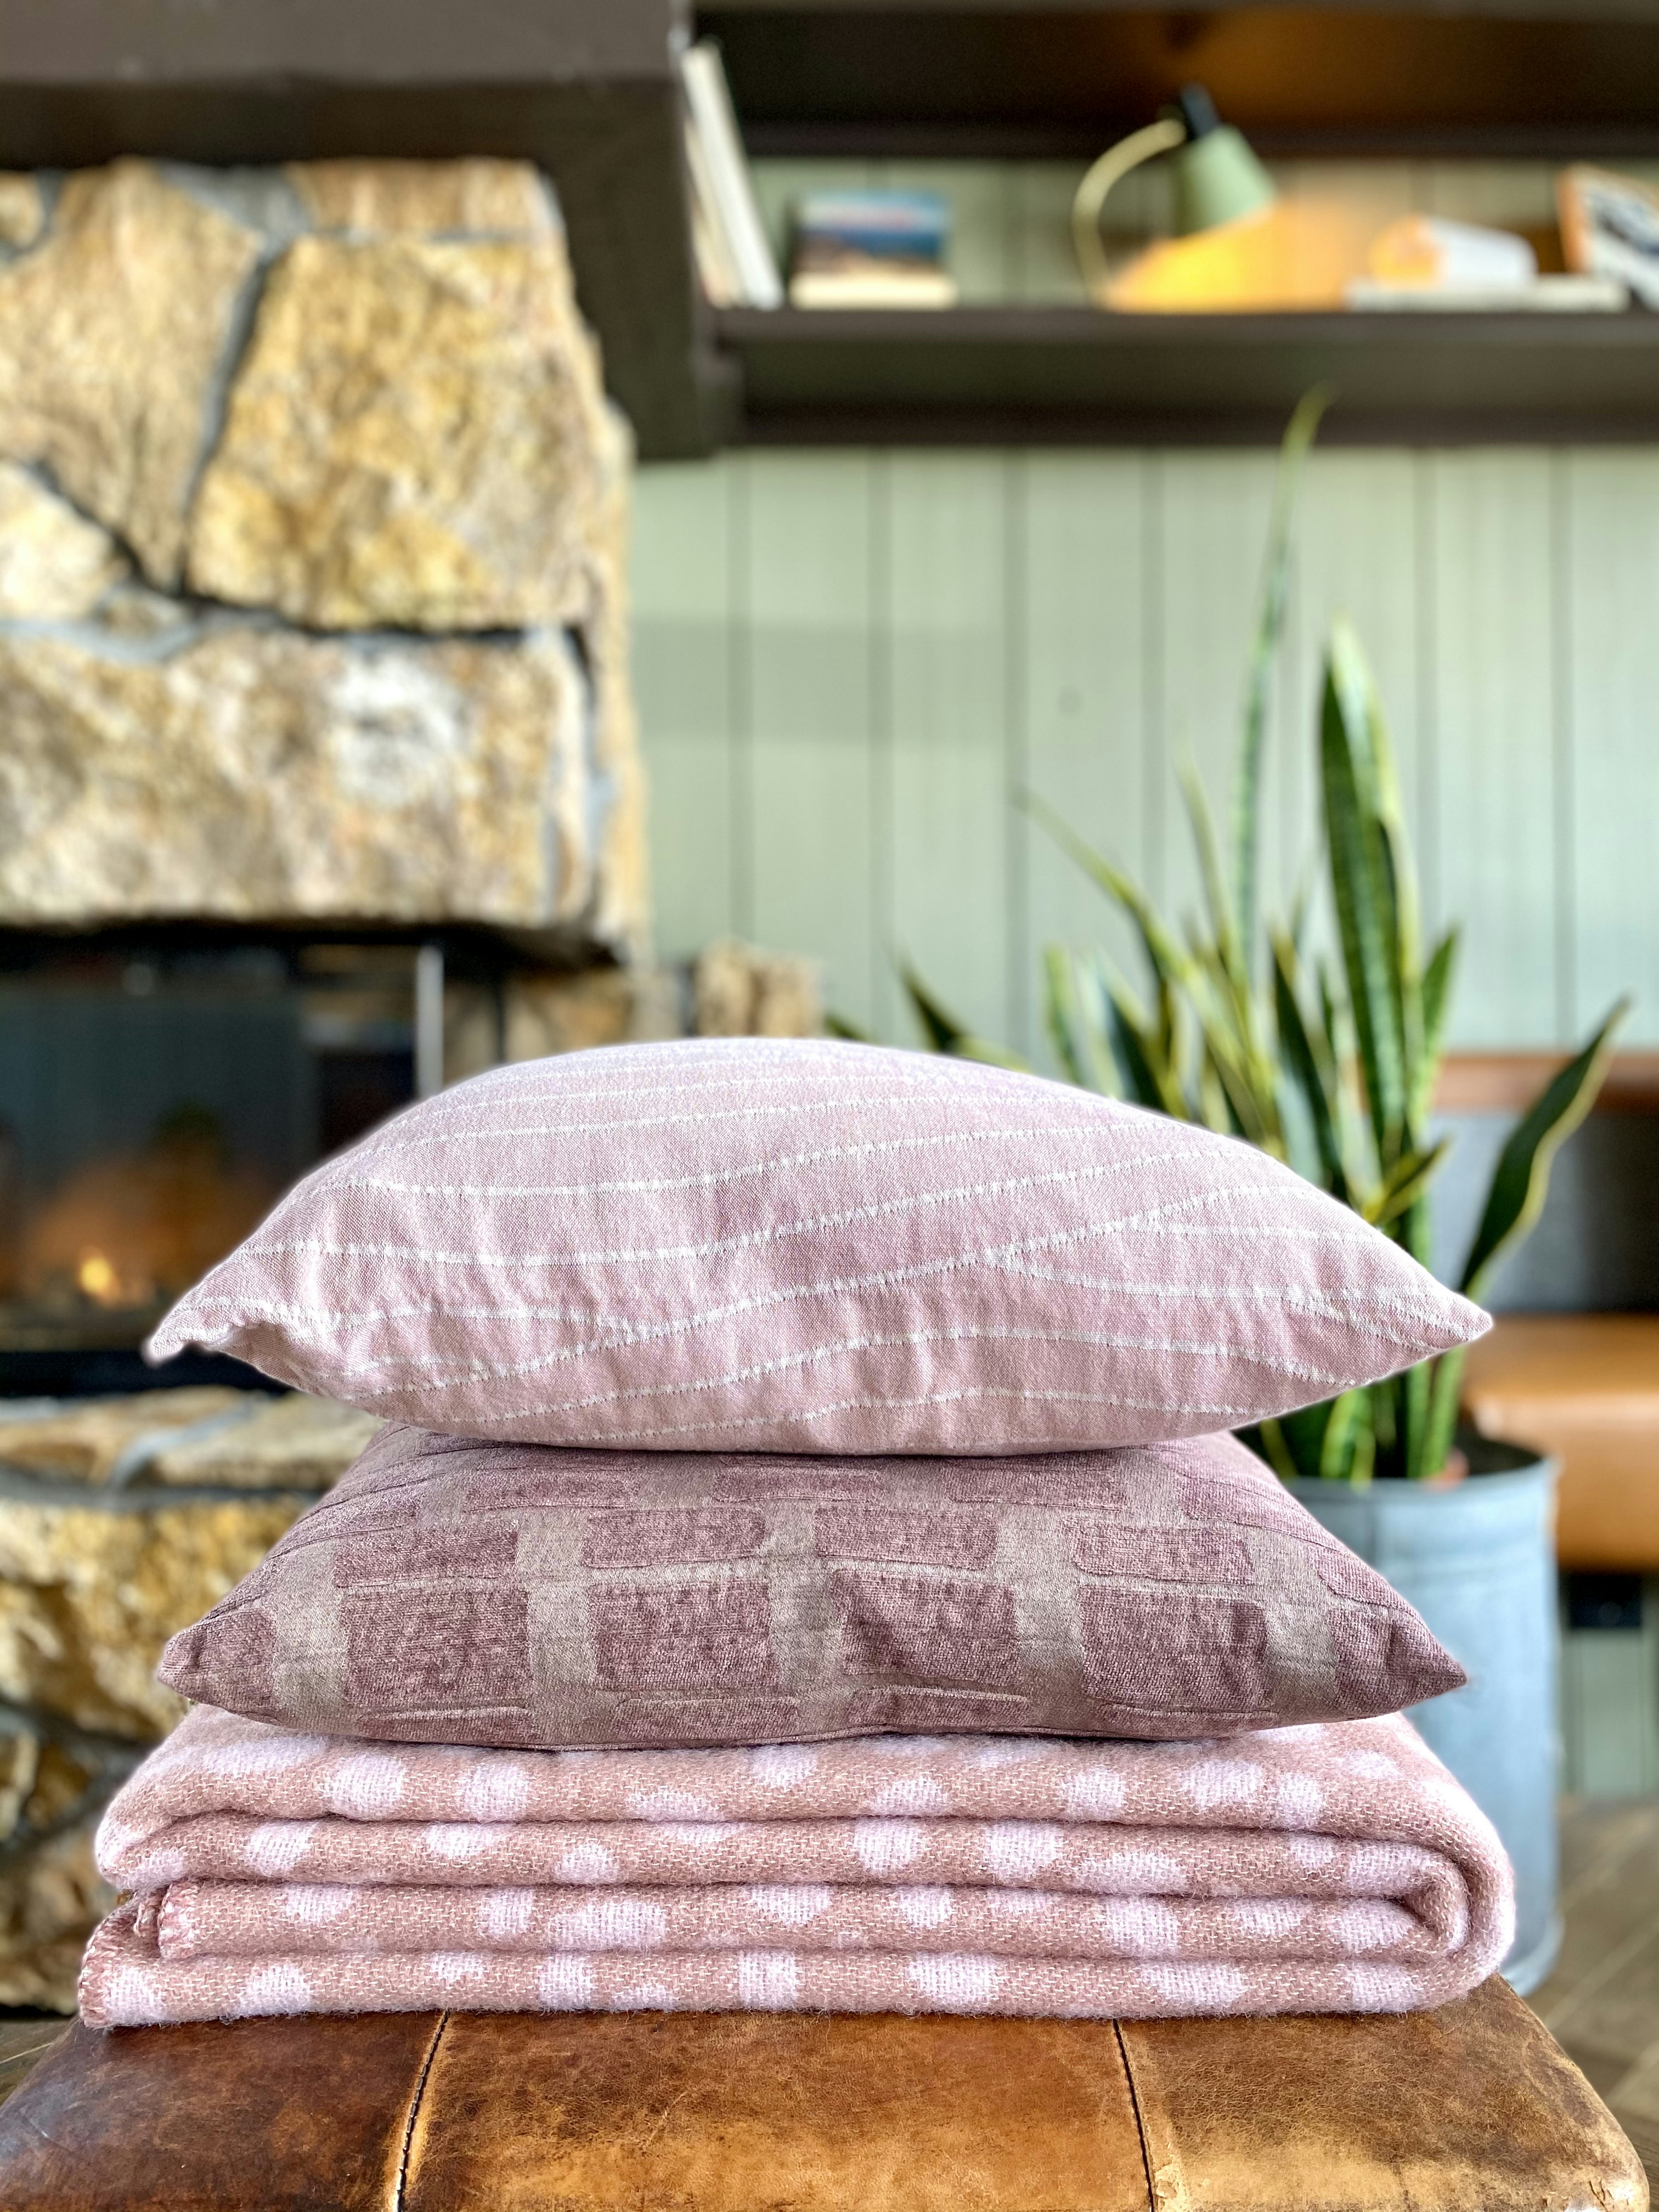 ÖLDUR & BAST cushions
MELAR wool blanket